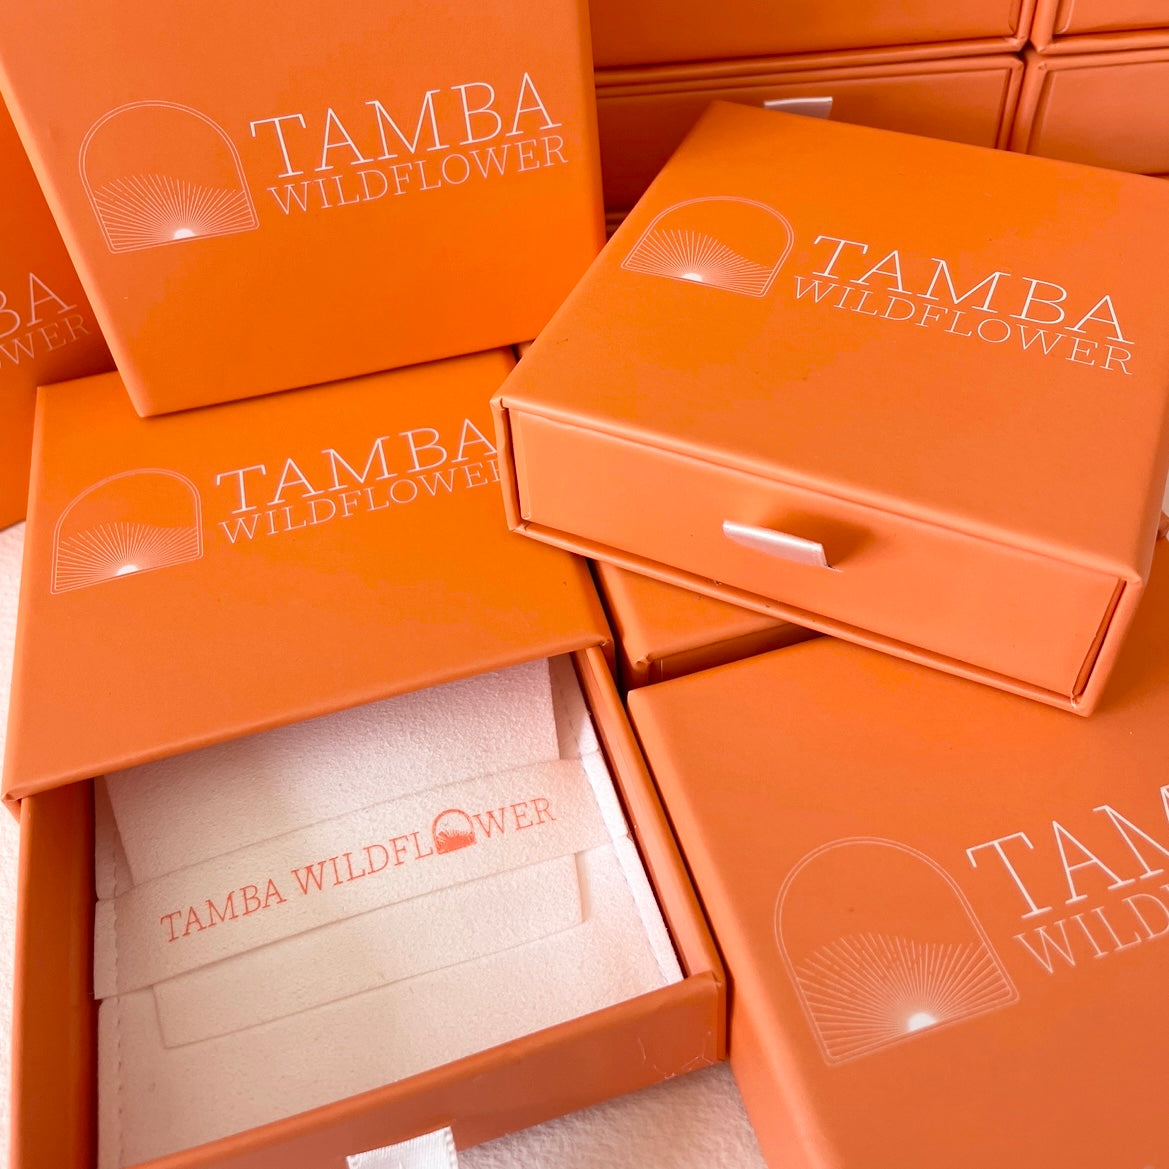 Tamba Wildflower Packaging